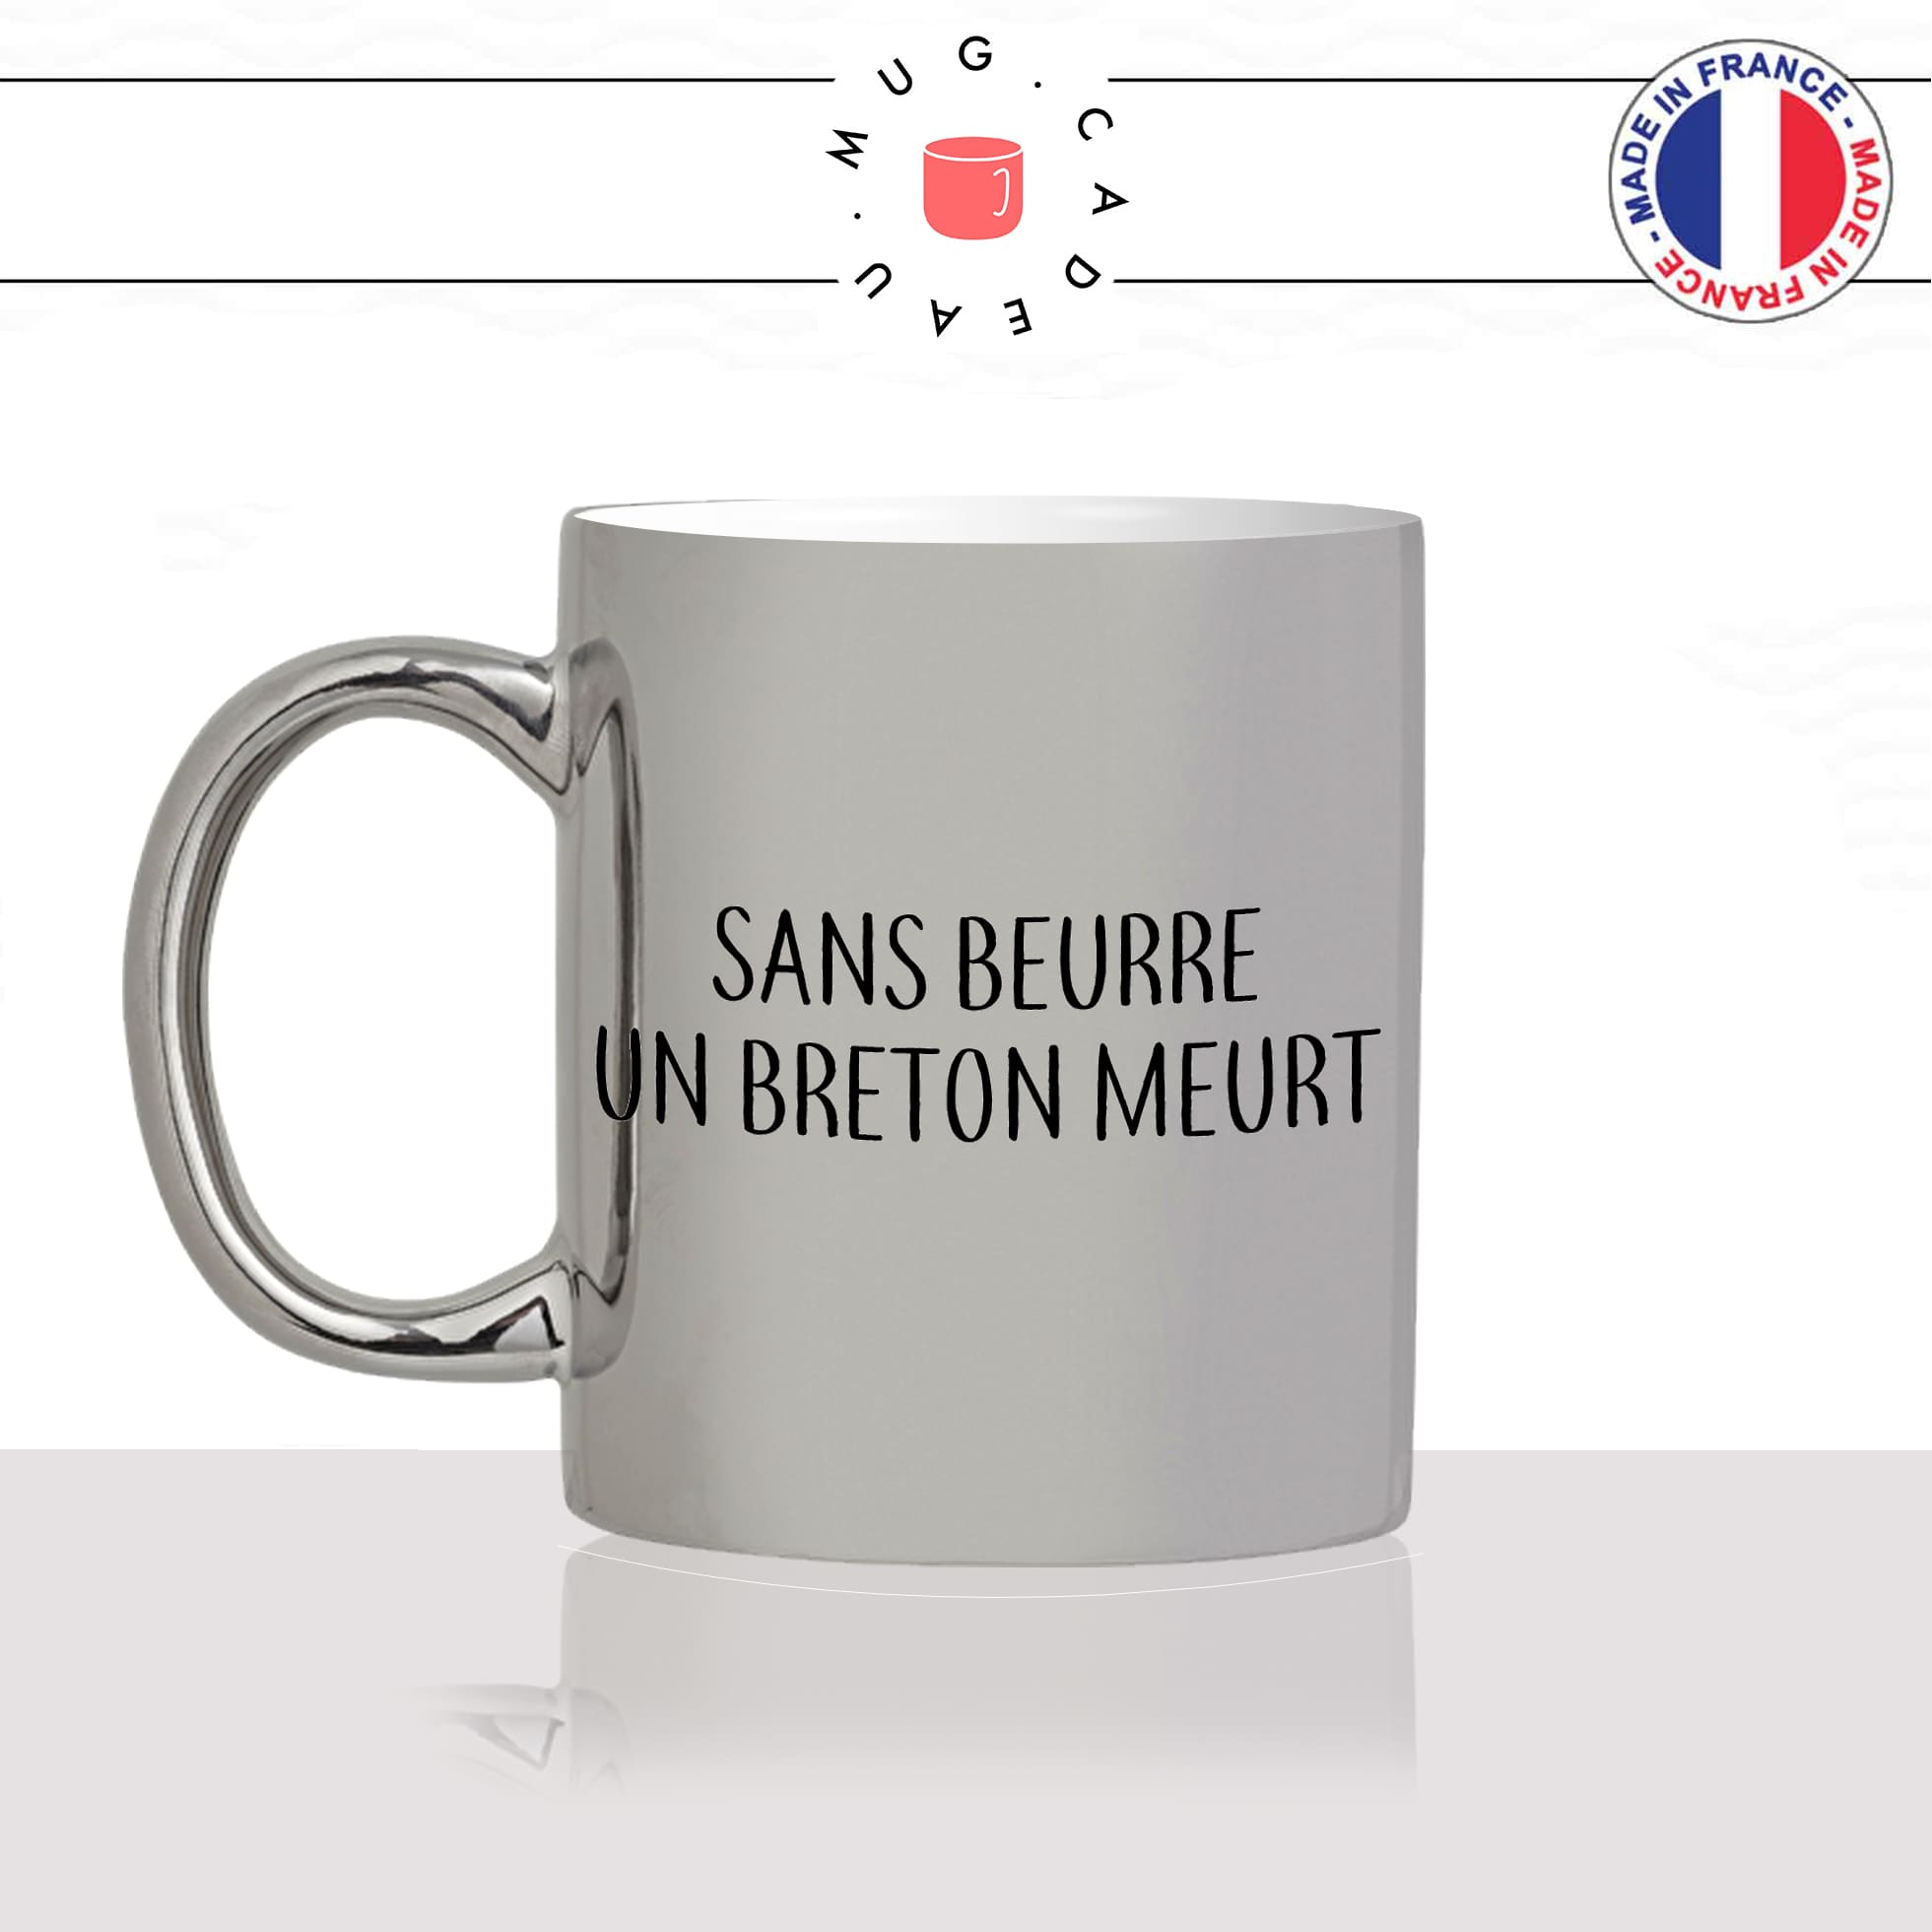 mug-tasse-argent-argenté-silver-sans-beurre-salé-un-breton-meurt-doux-sel-bretagne-humour-francais-idée-cadeau-fun-cool-café-thé